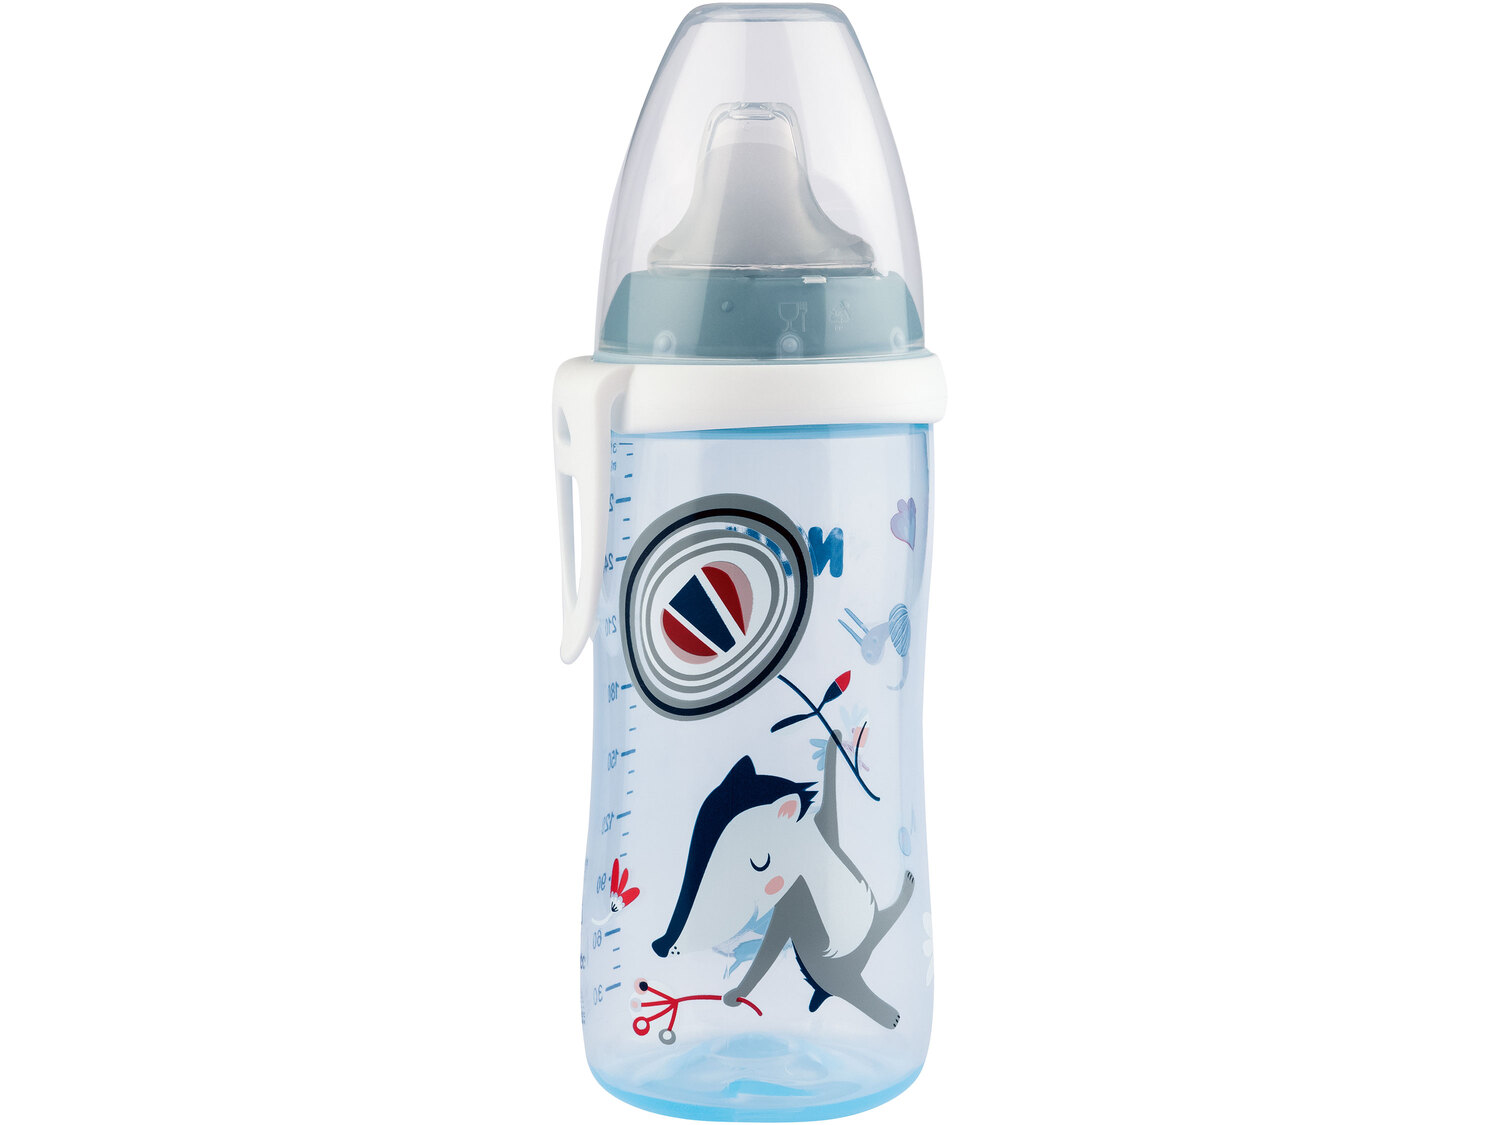 Butelka dla dzieci , cena 19,99 PLN 
5 wzorów 
- z klipsem do mocowania
- miękki ...